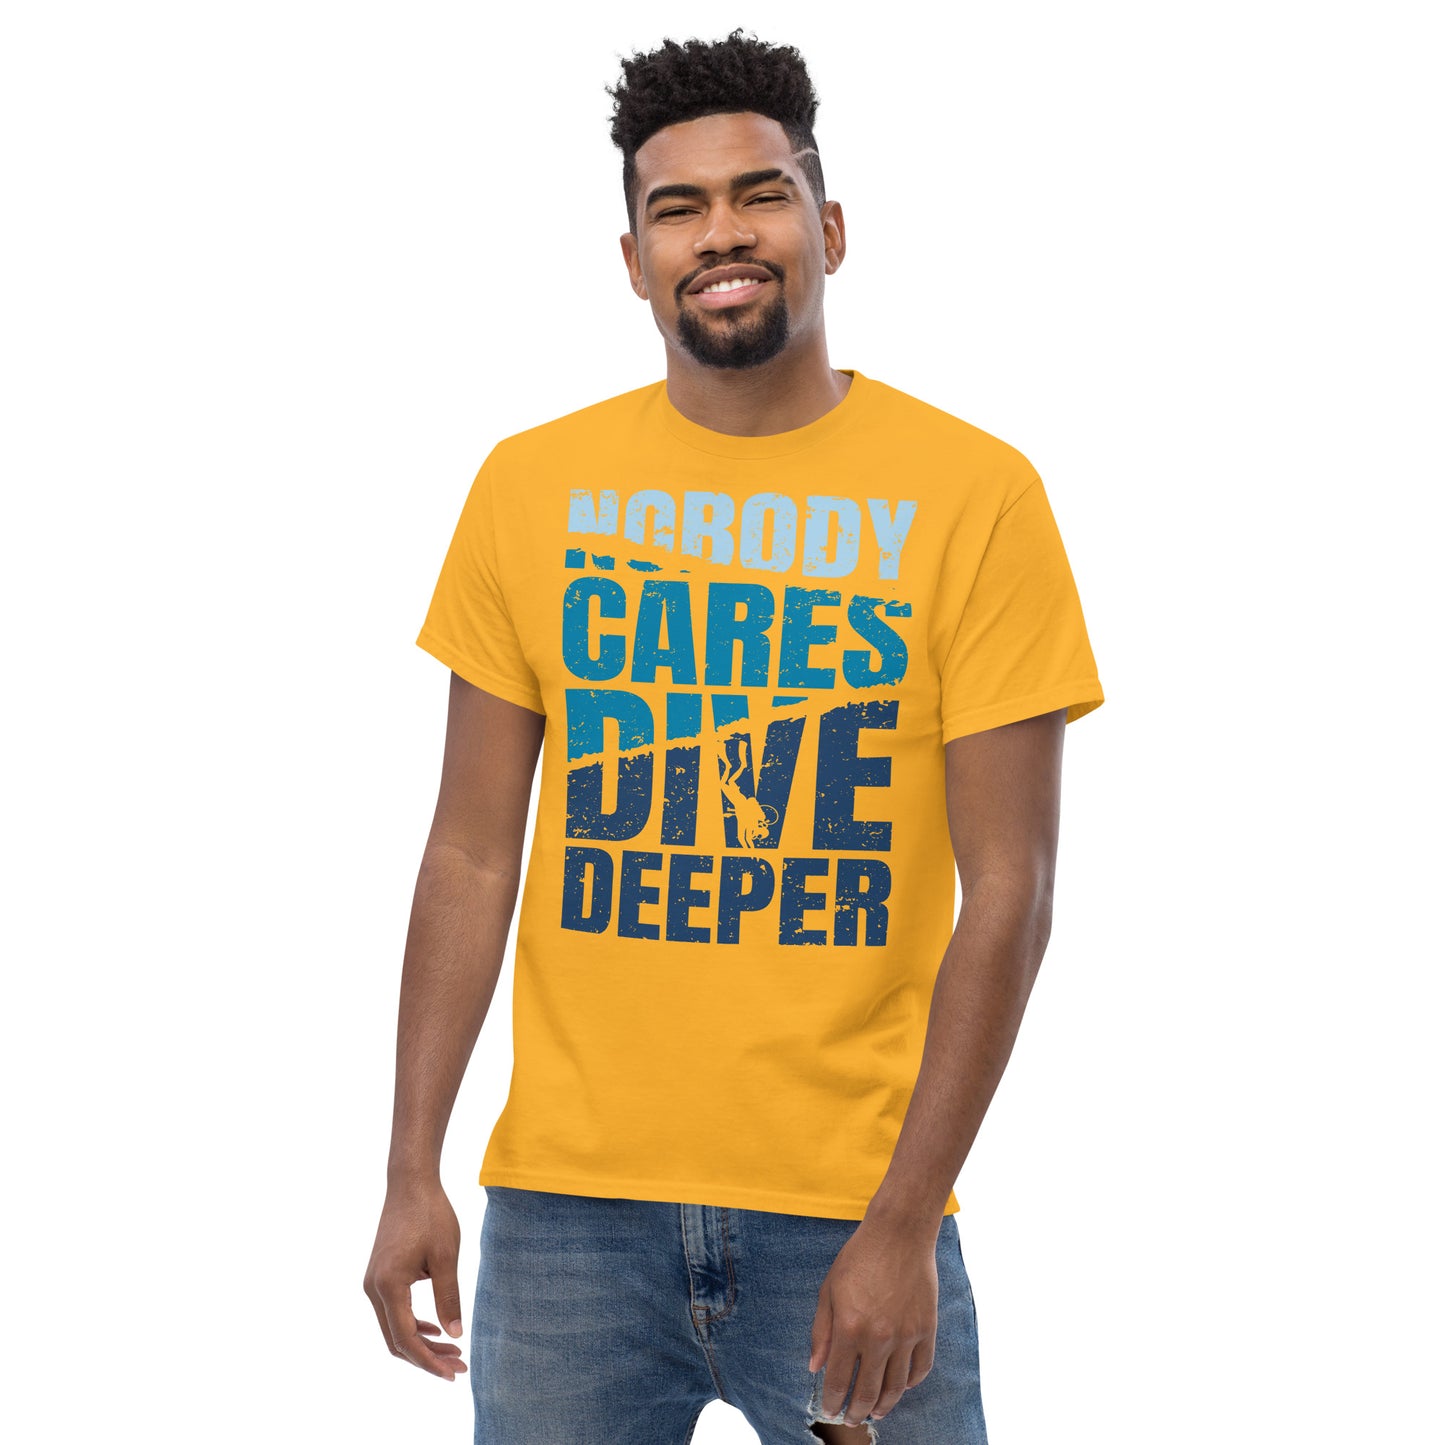 Dive Deeper T-Shirt